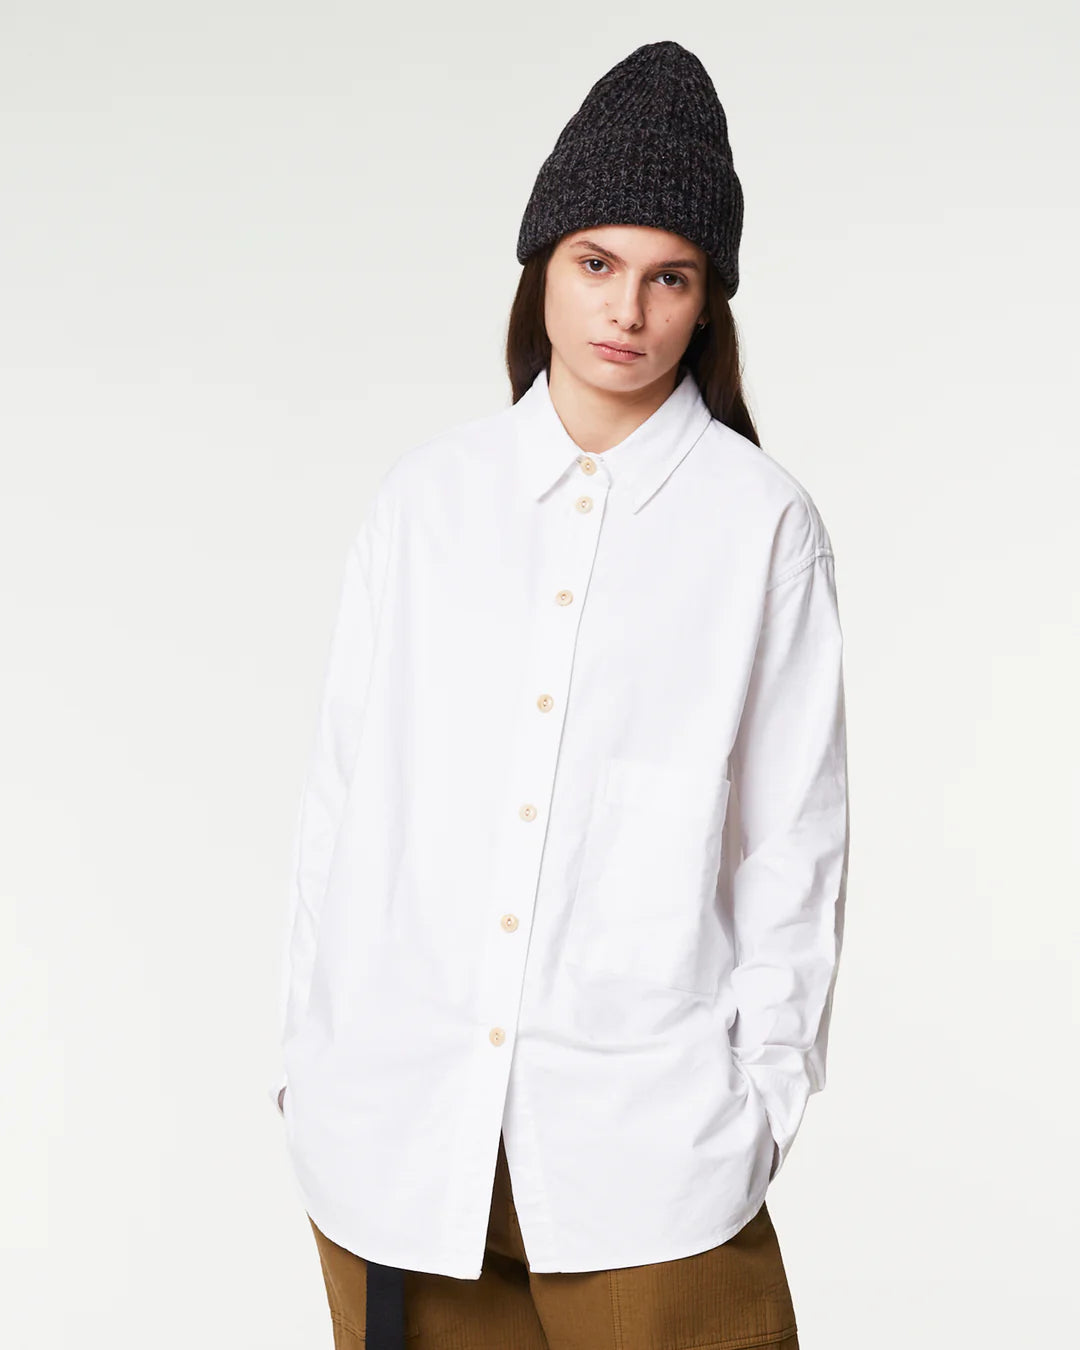 Maxi Shirt Oxford White